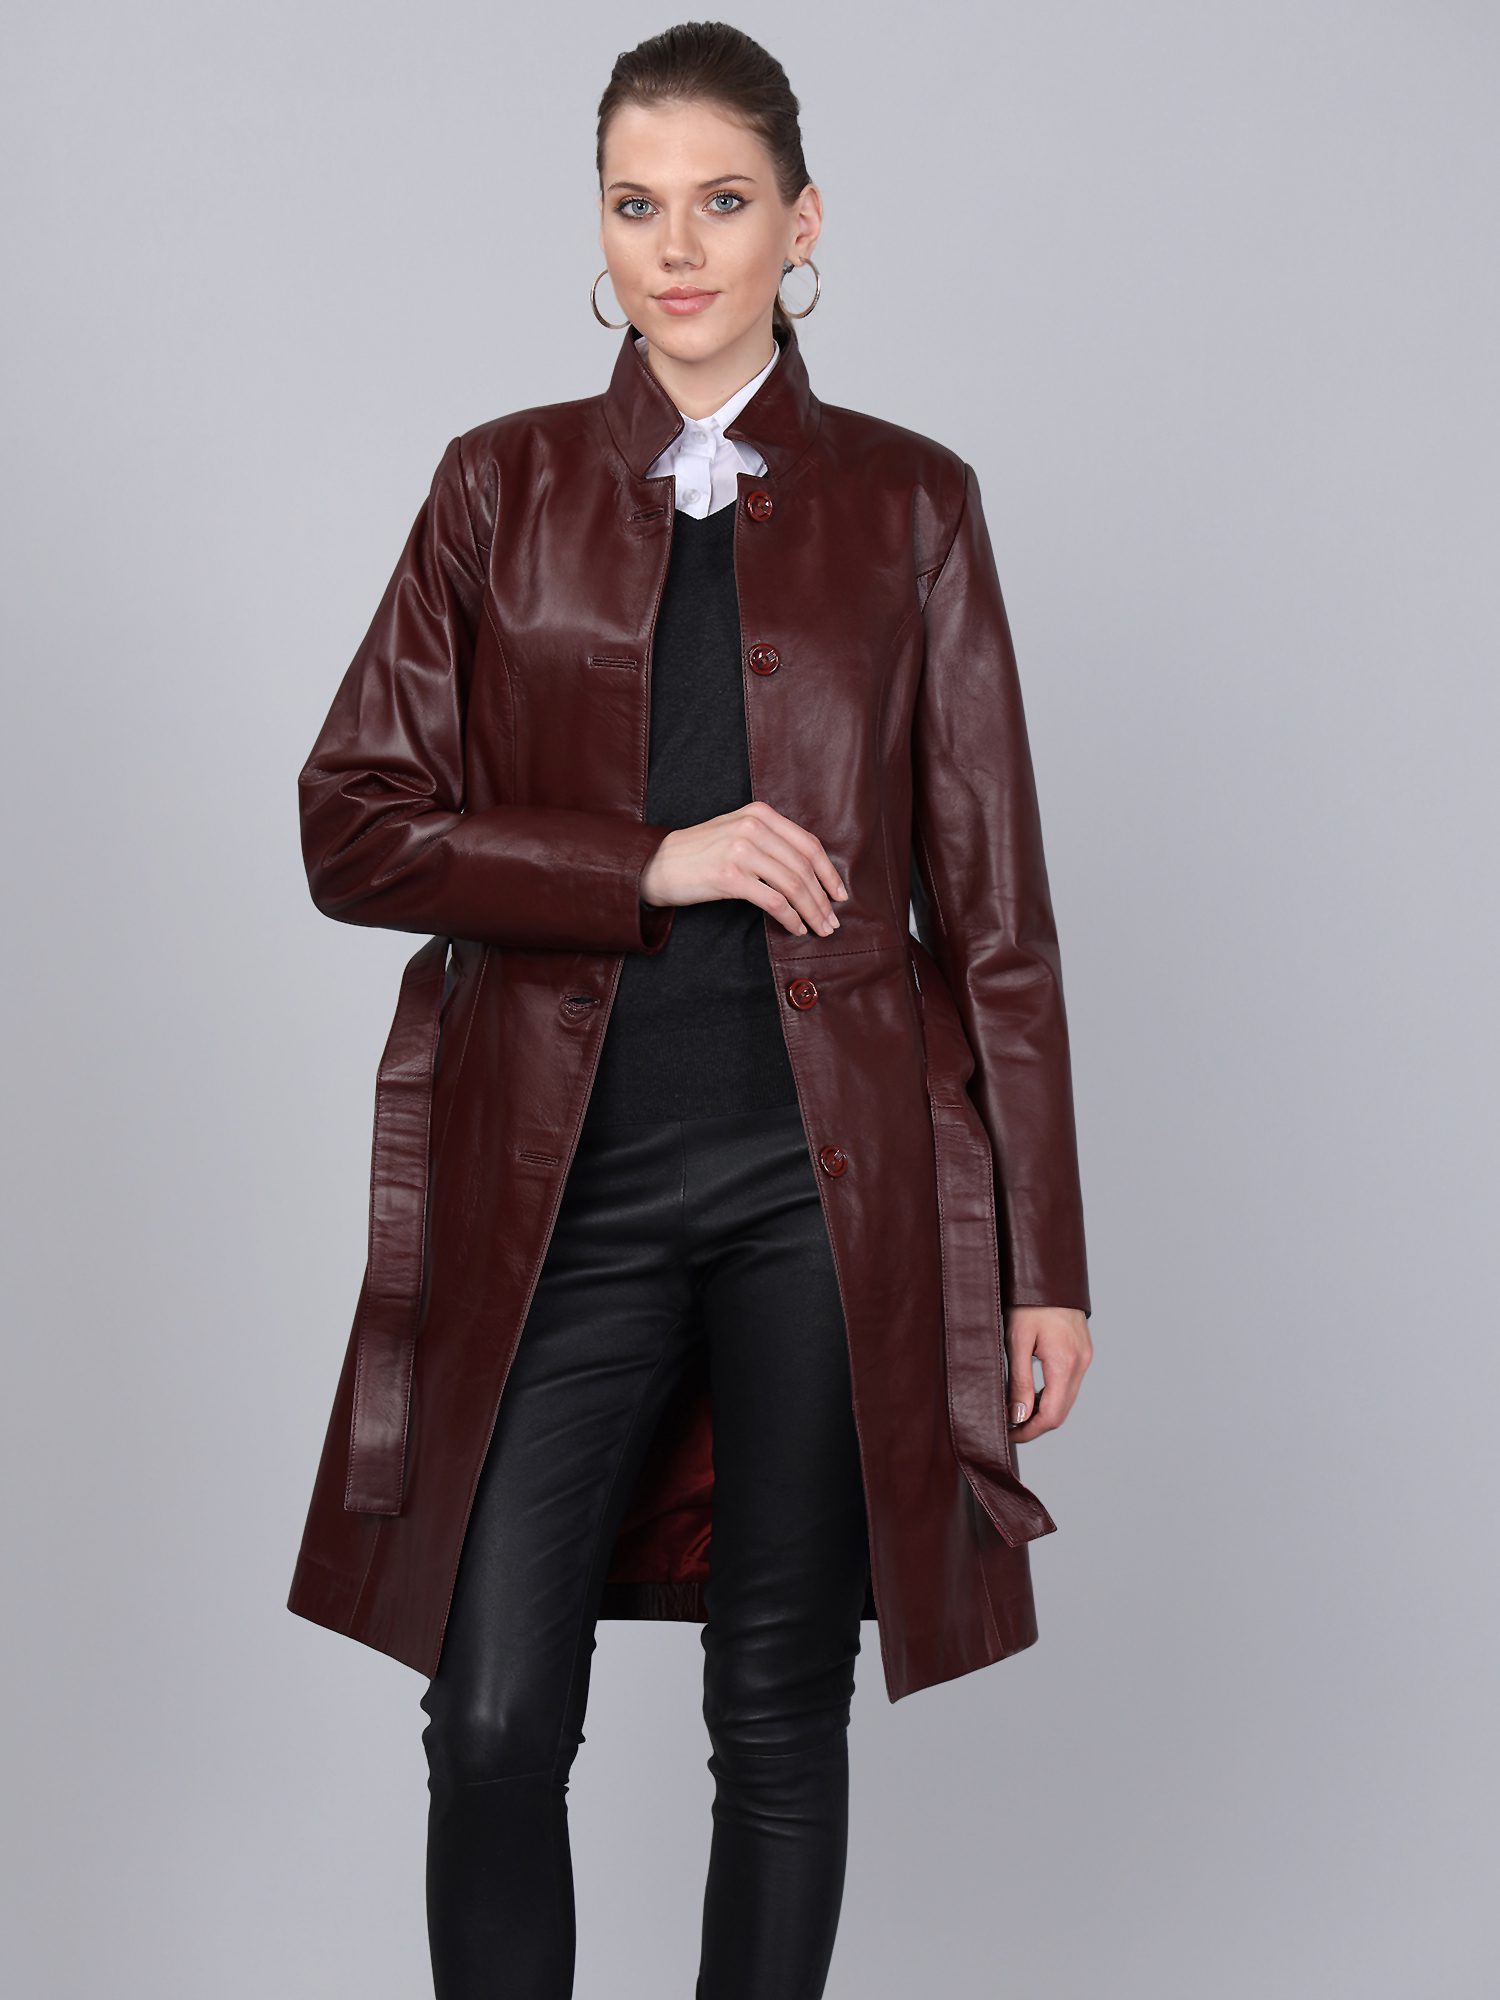 Women's Leather Jacket - Basics&More